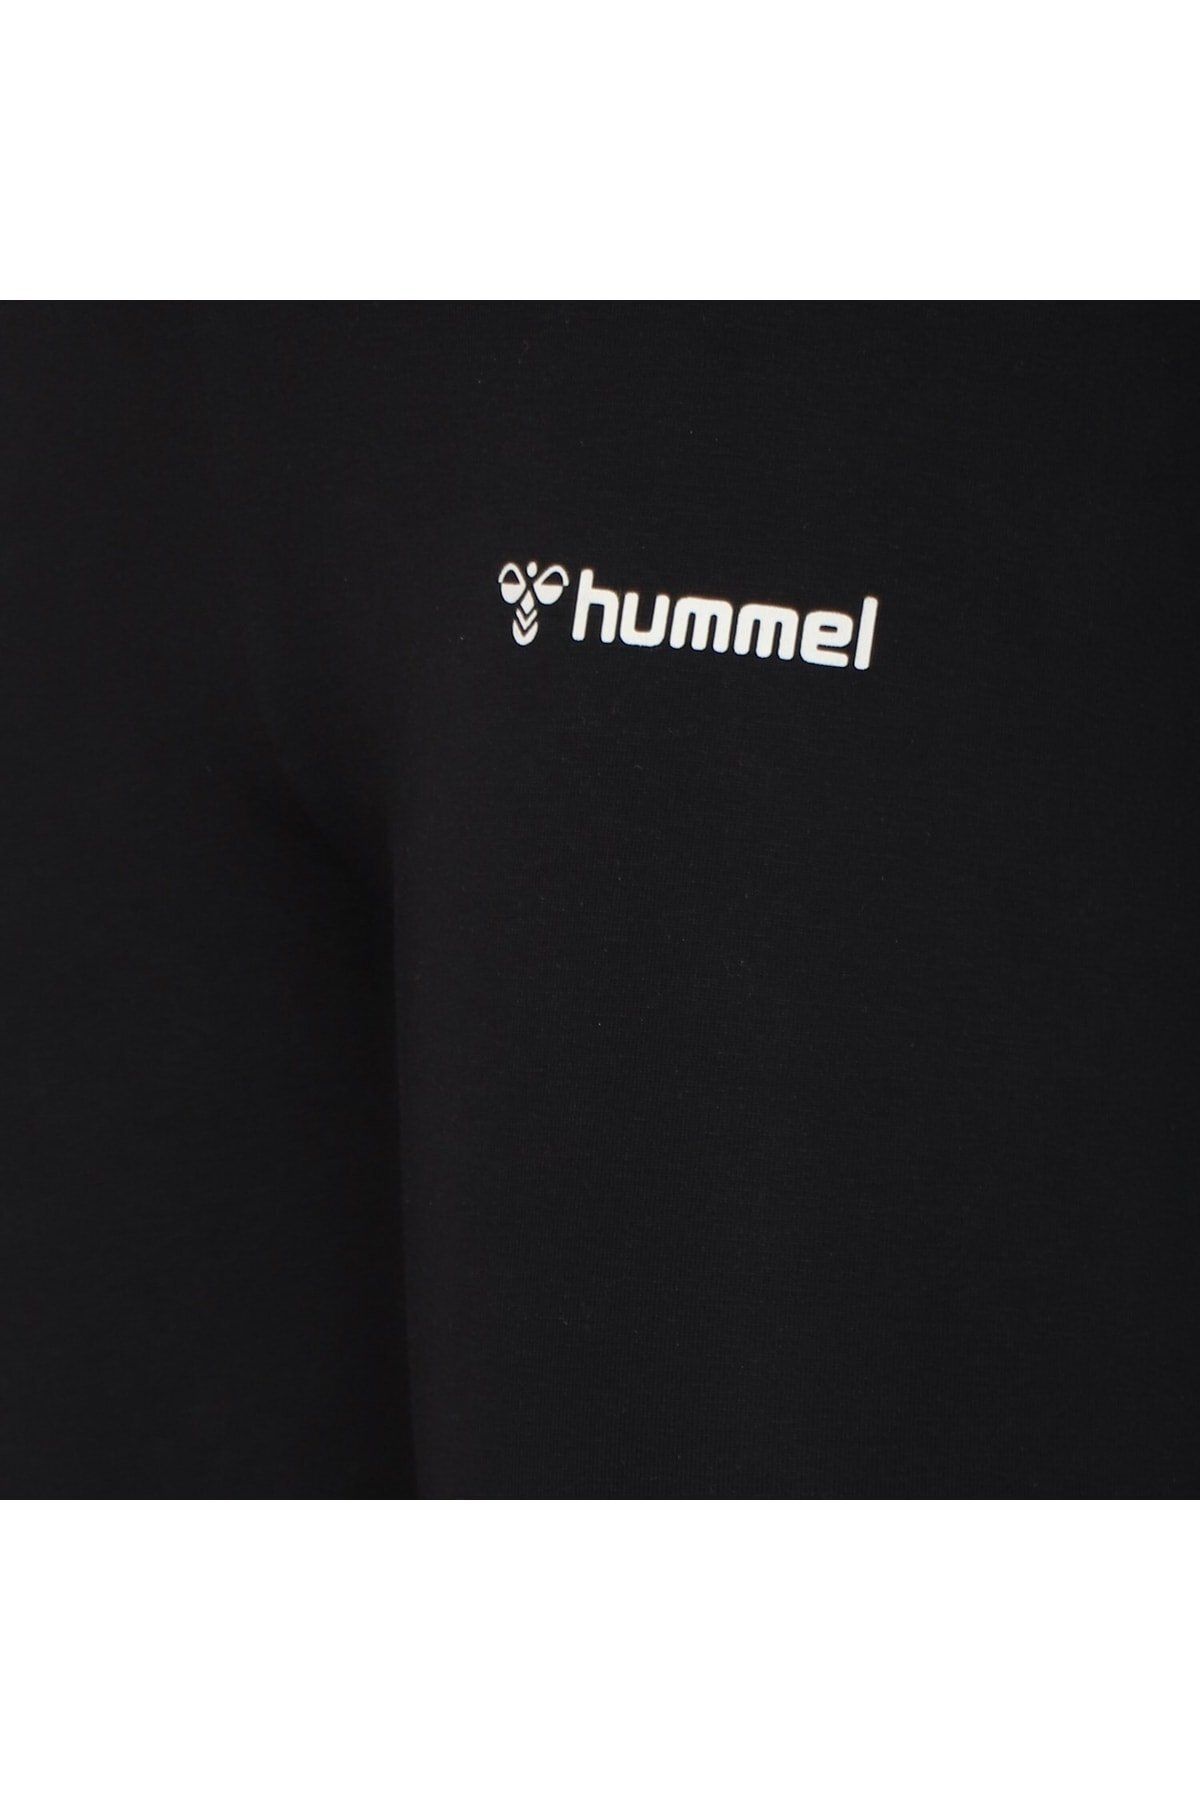 hummel 931685-2001 لباس تنگ هومل هوملین